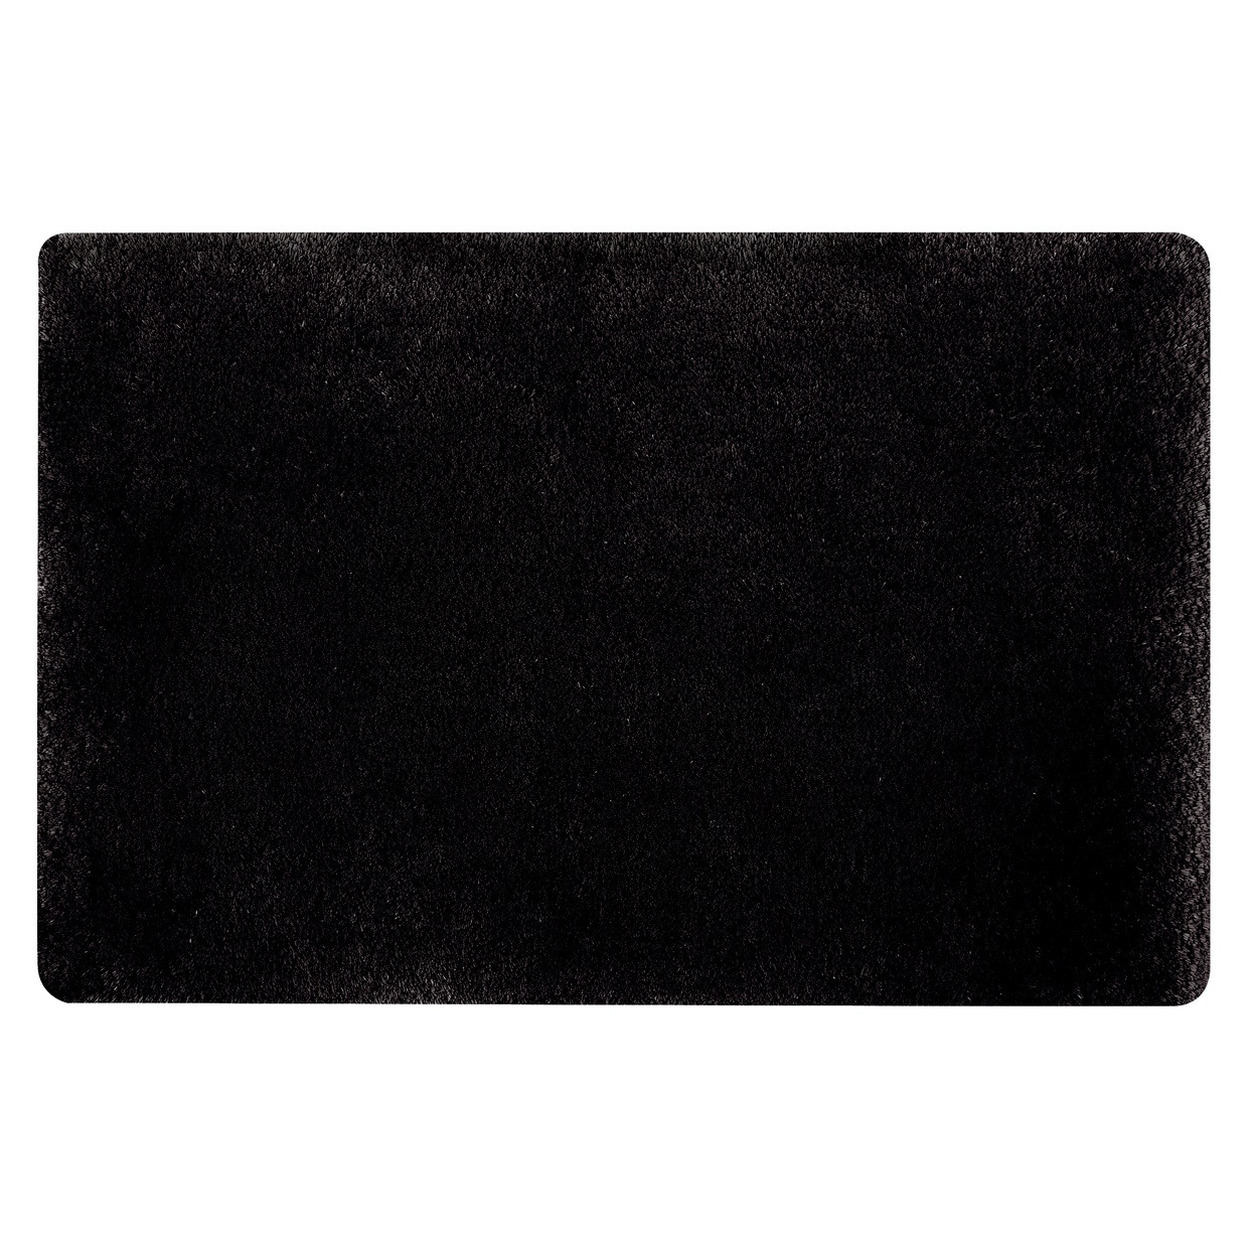 Spirella badkamer vloer kleedje-badmat tapijt hoogpolig en luxe uitvoering zwart 60 x 90 cm Microfib